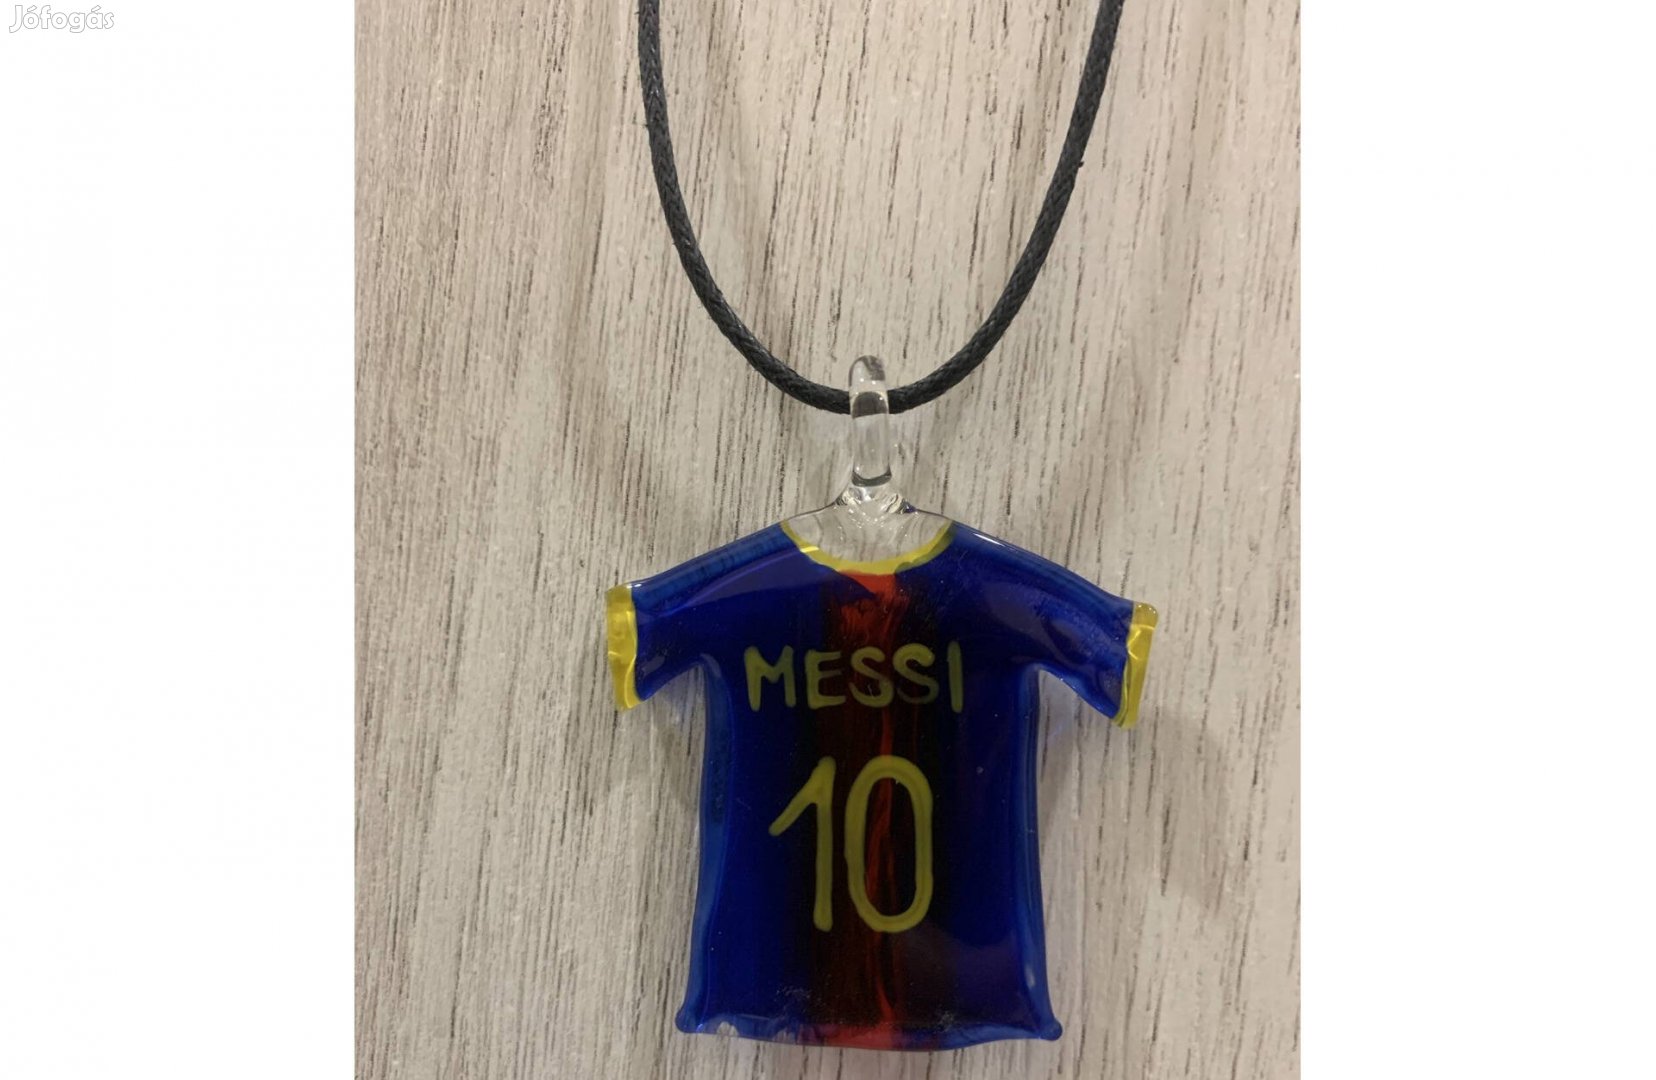 Messi nyaklánc 36 cm, Új Messi üveg medál, kézműves termék Szlovénia